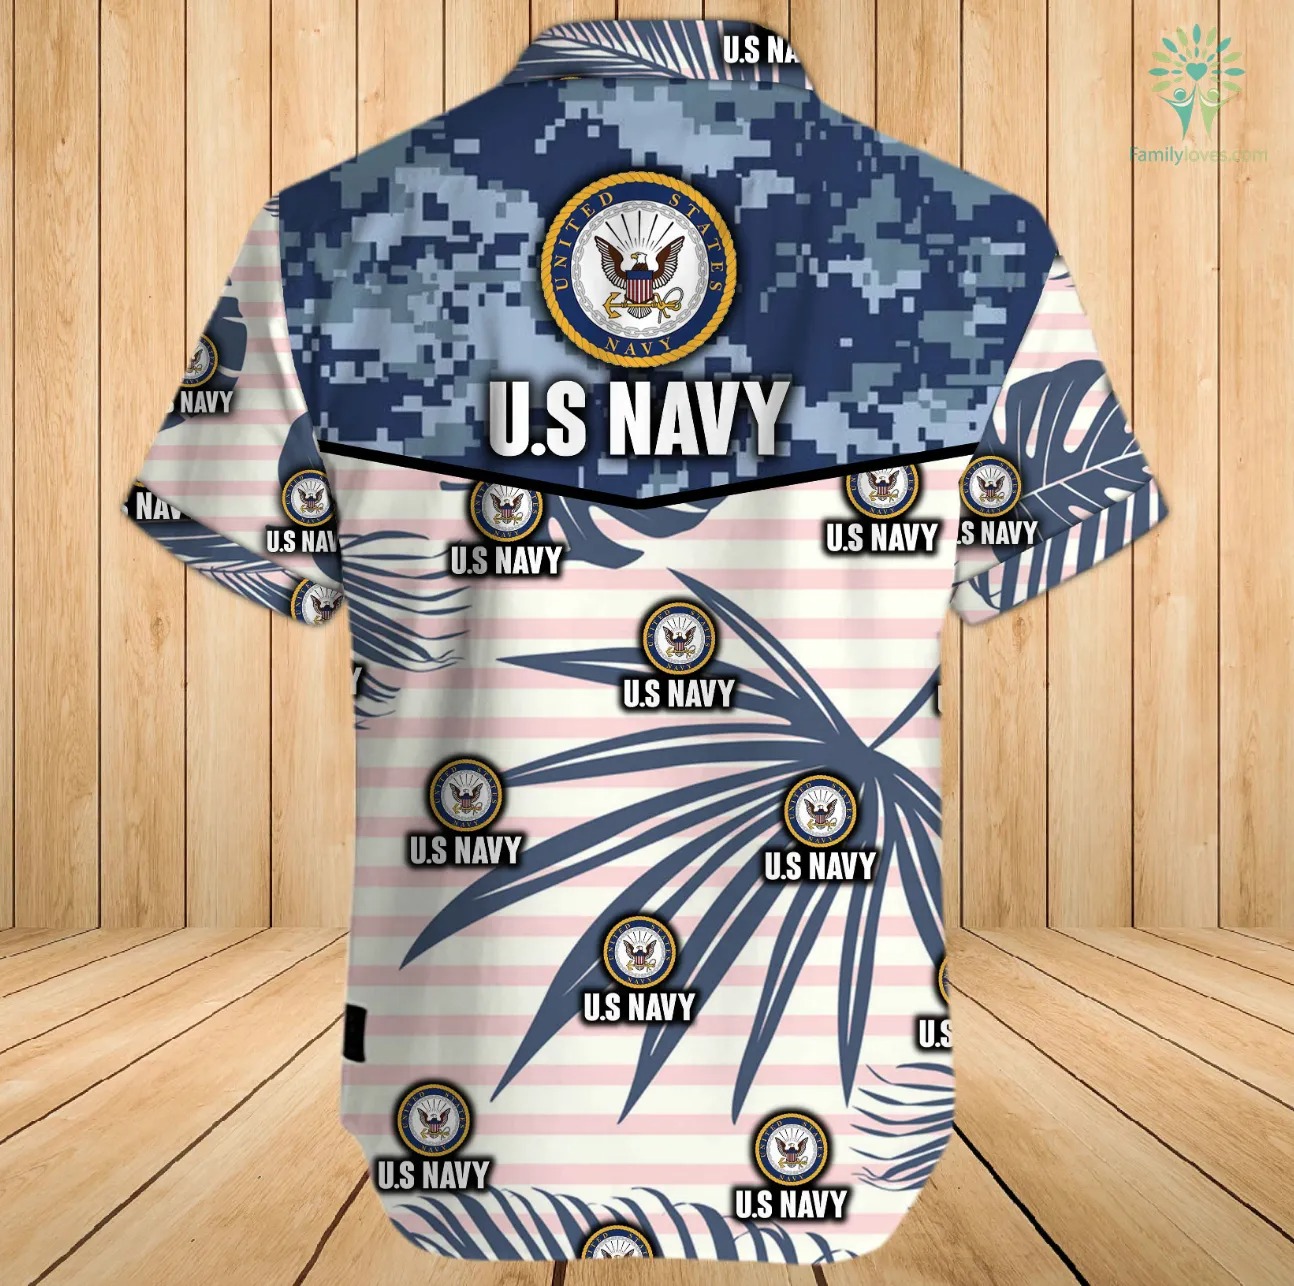 US navy hawaiian shirt and shorts - pic 3